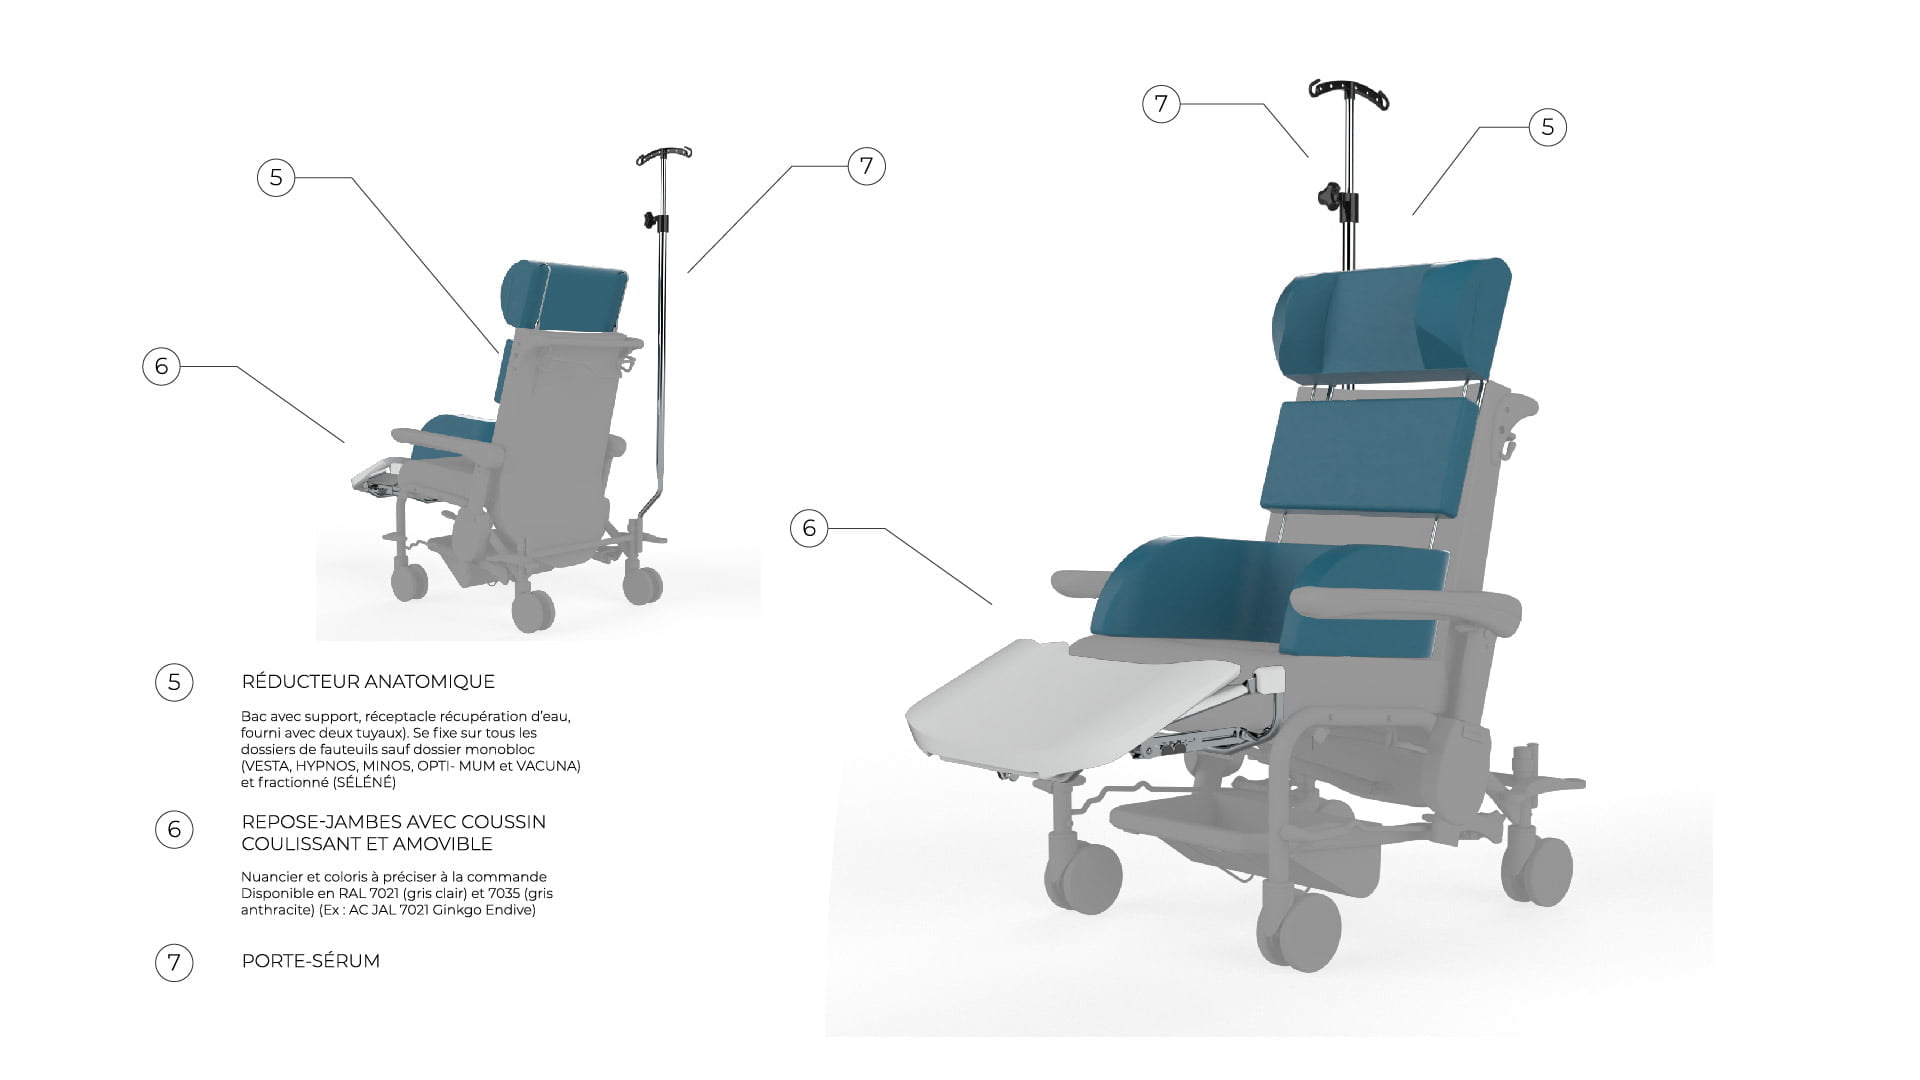 Schéma présentant les différents accessoire pour fauteuil médical Navailles : repose jambe avec coussin, porte sérum